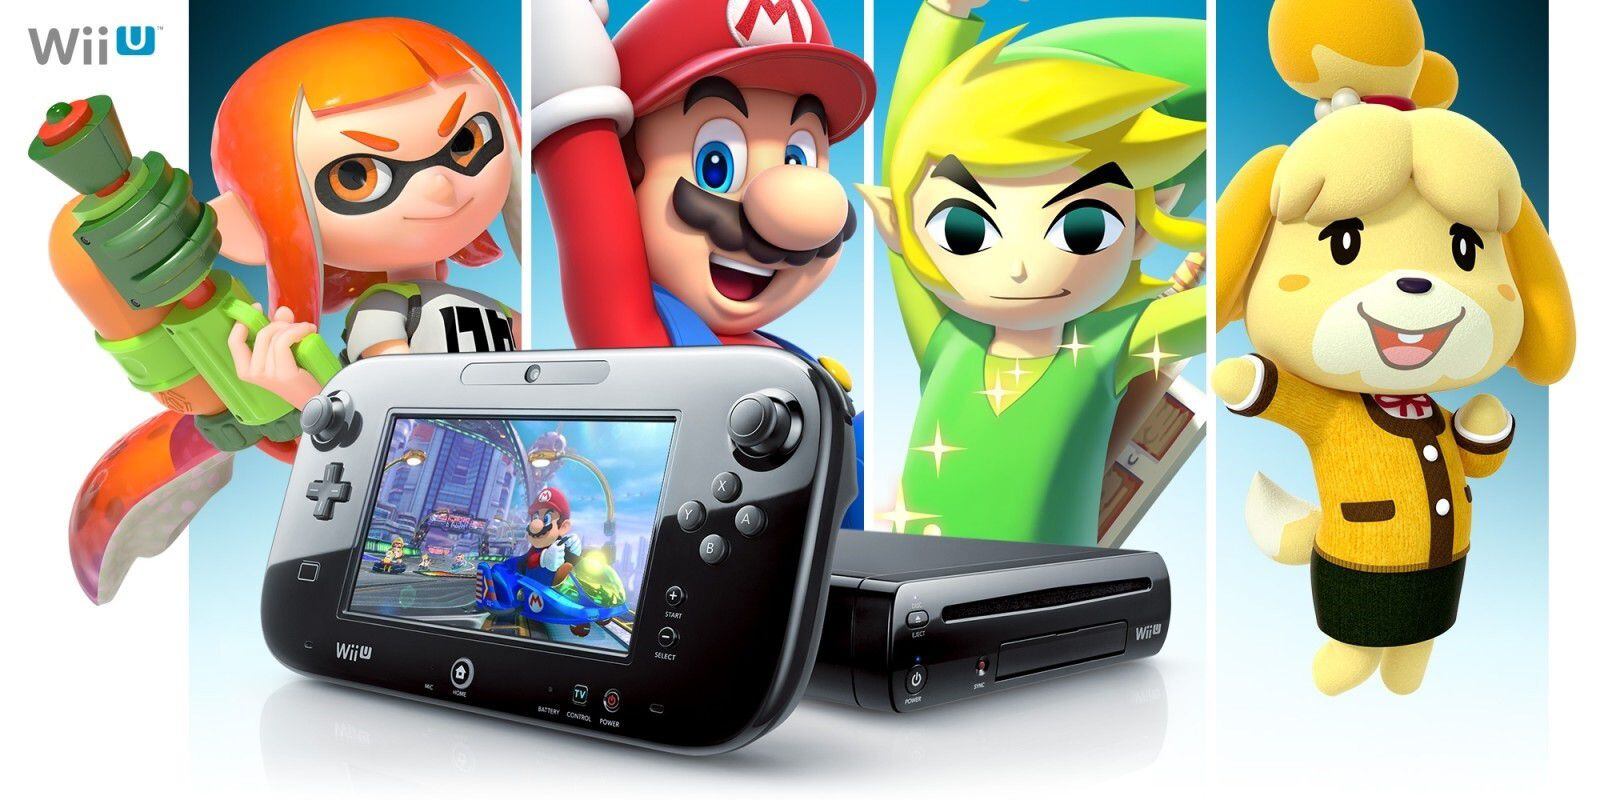 Nintendo cerrará el acceso a los servicios en línea para Nintendo 3DS y Wii U el próximo 8 de abril. (NINTENDO) 